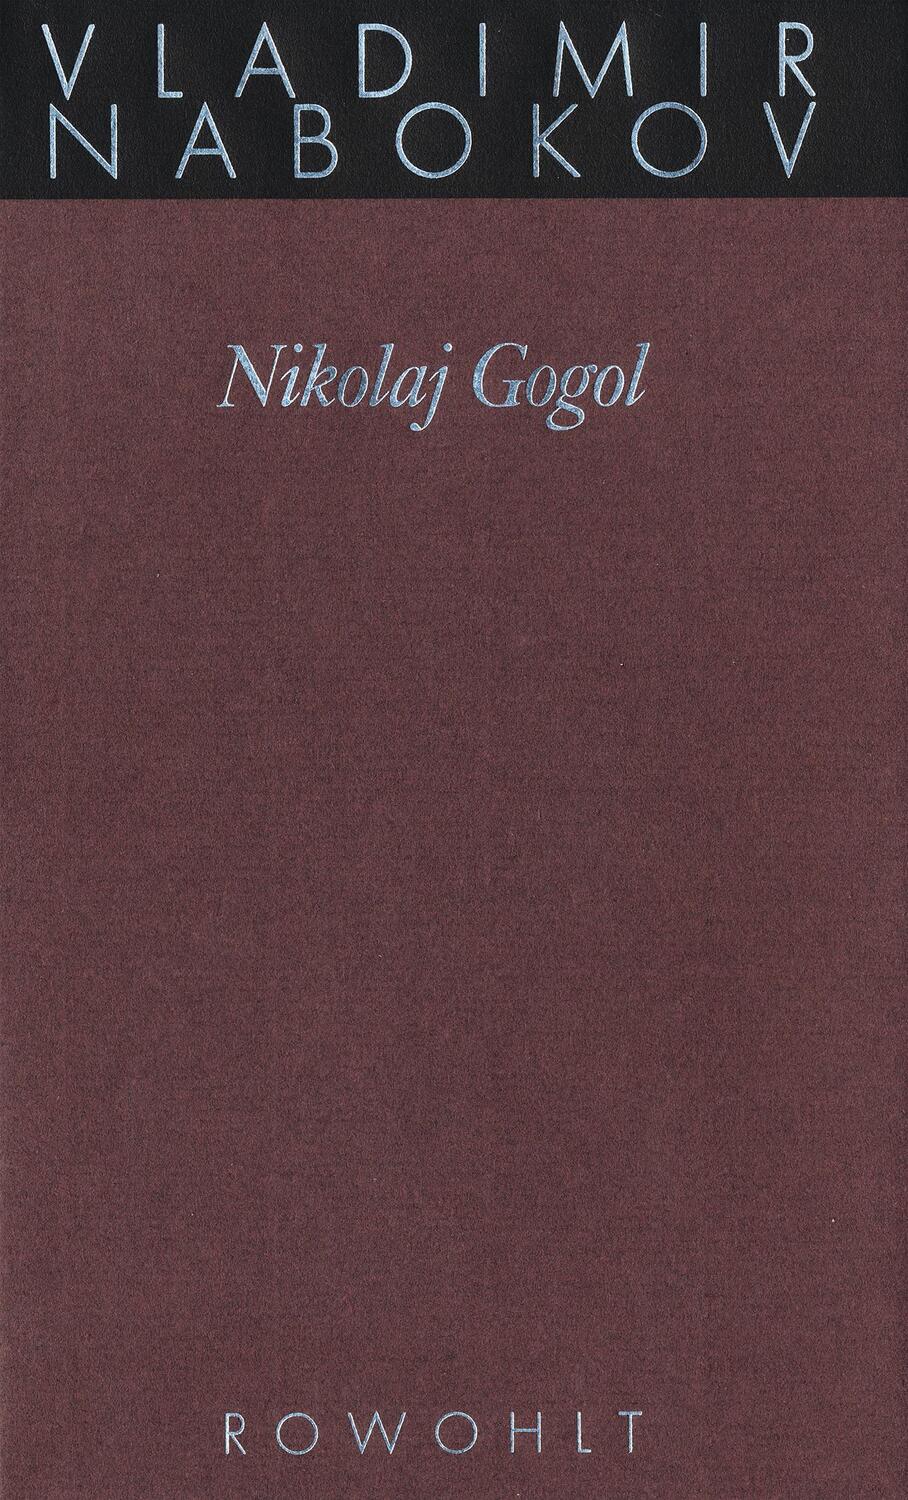 Gesammelte Werke 16. Nikolay Gogol - Nabokov, Vladimir